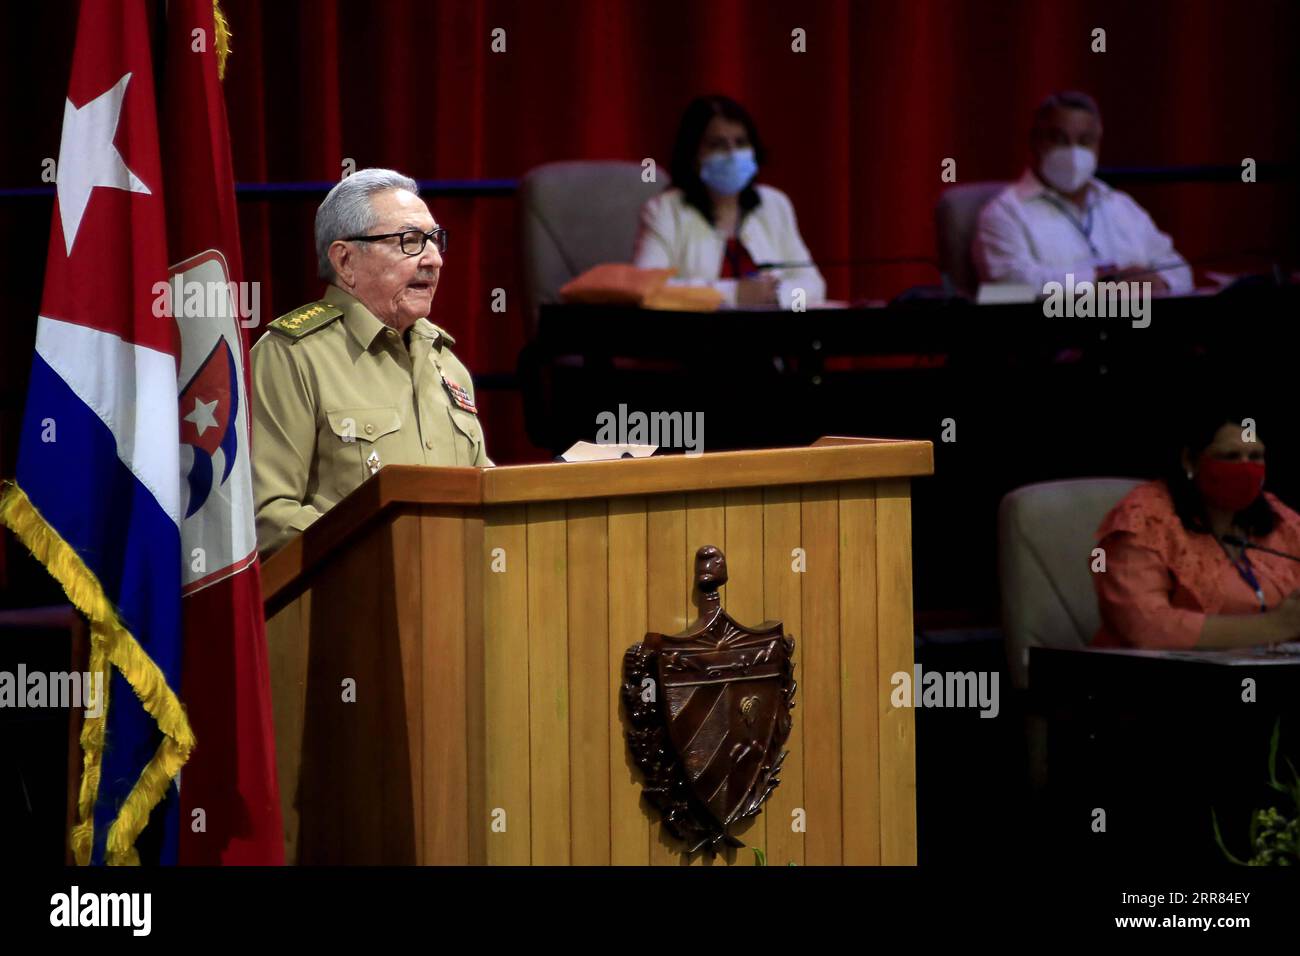 210417 -- L'AVANA, 17 aprile 2021 -- primo segretario del Comitato centrale del Partito Comunista di Cuba il PCC Raul Castro presenta il rapporto chiave nel giorno di apertura dell'ottavo Congresso del PCC a l'Avana, capitale di Cuba, 16 aprile 2021. Castro venerdì ha annunciato che si ritirerà come capo del partito. Ariel Royero/Prensa Latina/Handout via CUBA-HAVANA-RAUL CASTRO-RETIREMENT-ANNOUNCEMENT Xinhua PUBLICATIONxNOTxINxCHN Foto Stock